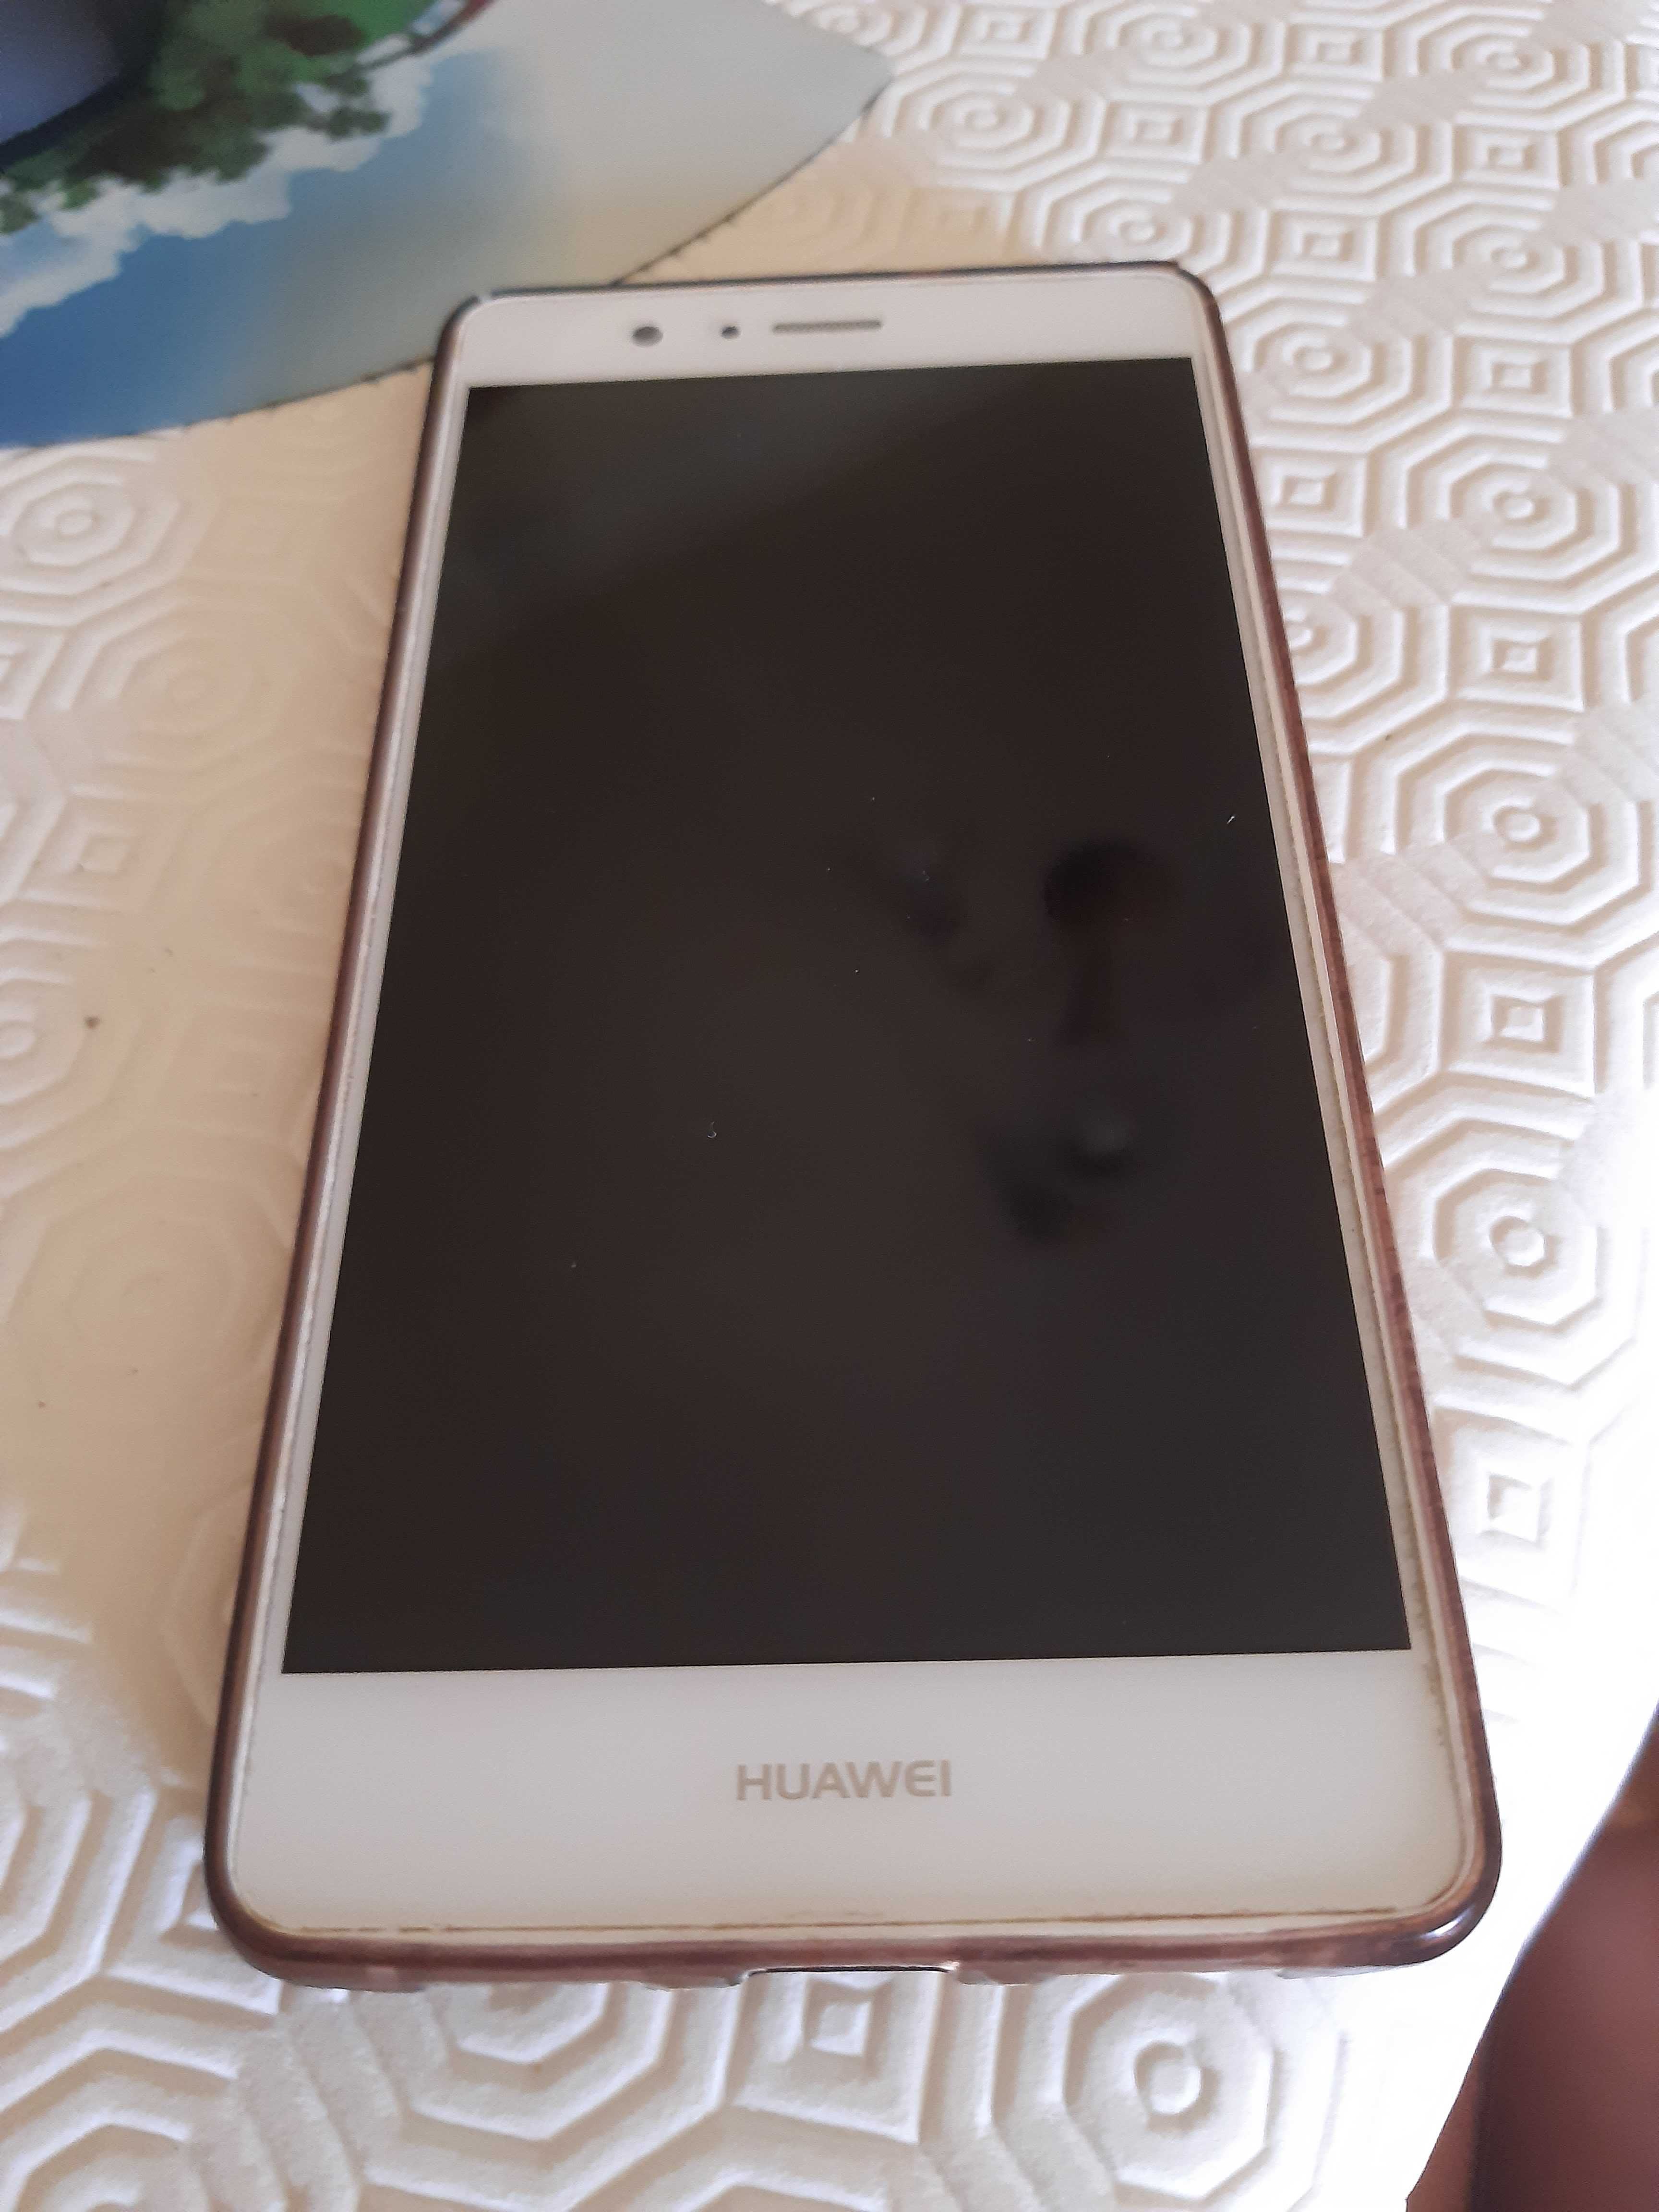 Telemovel Huawei - p9 lite 16gb - dual sim